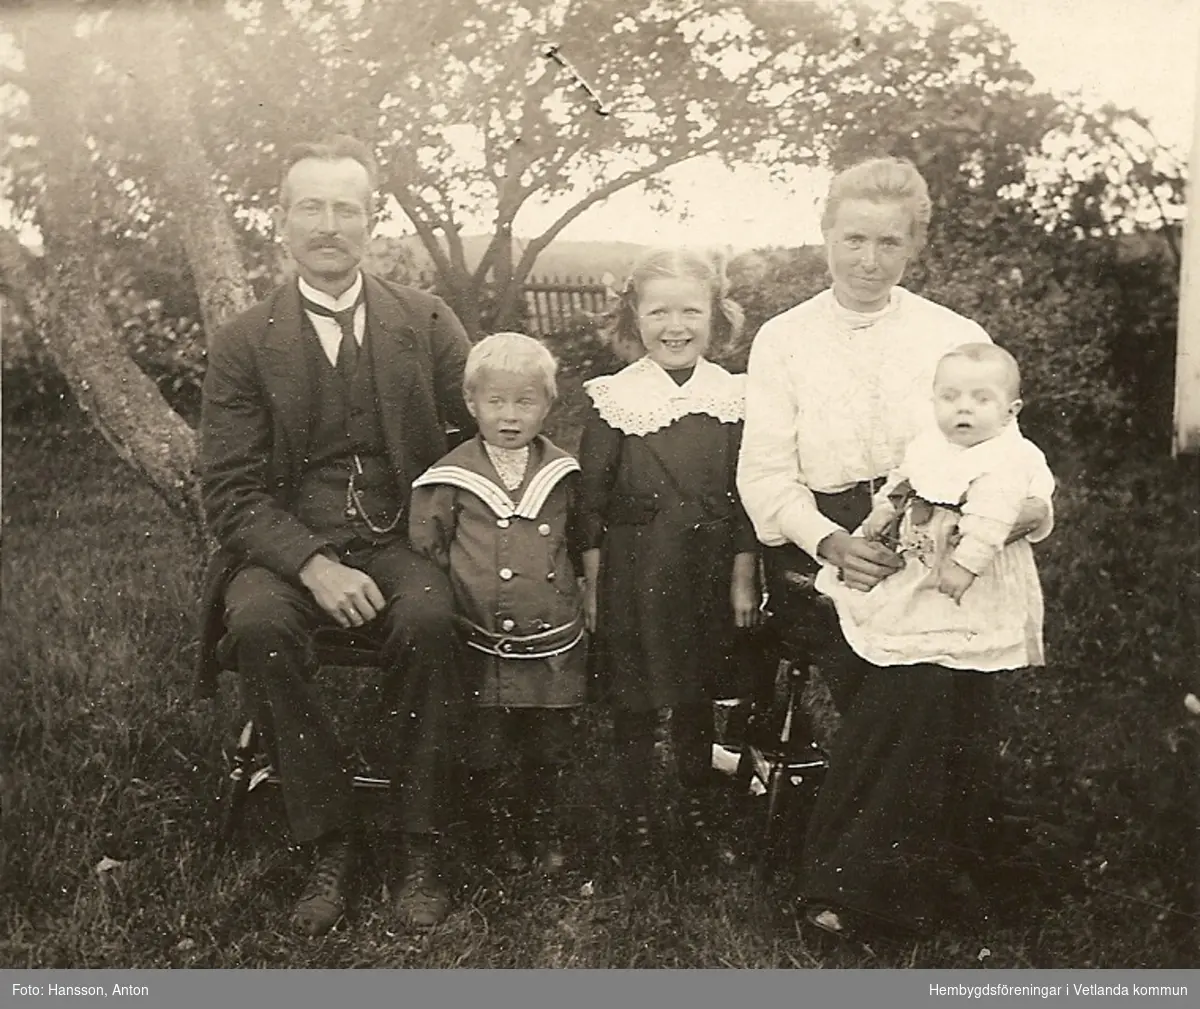 Familjefoto våren 1919, Fröset Västergård, Lyckorna.
 
Fröderyds Hembygdsförening